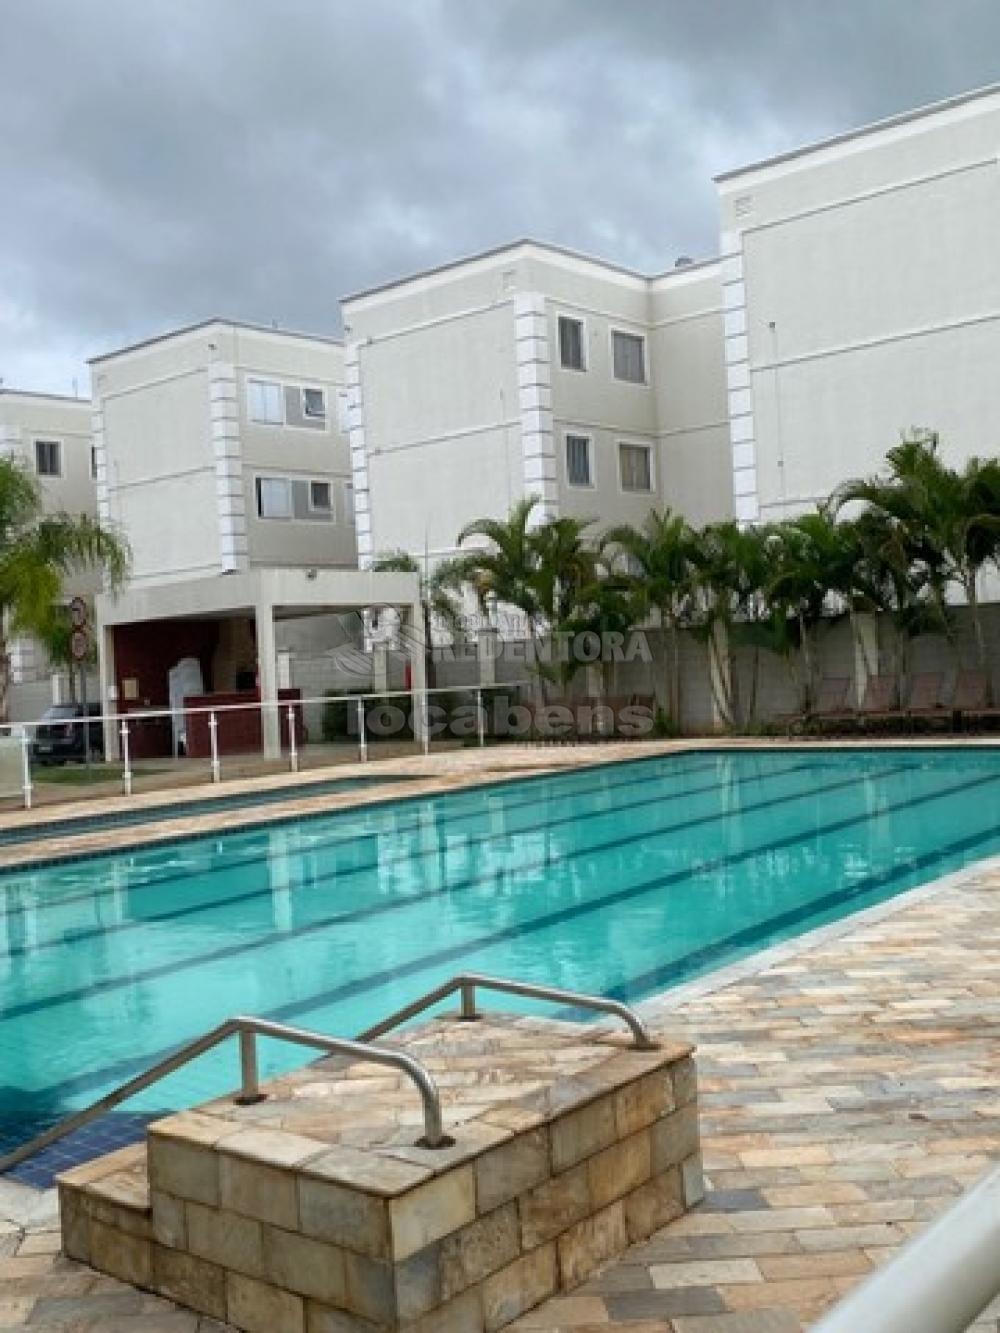 Comprar Apartamento / Padrão em São José do Rio Preto apenas R$ 150.000,00 - Foto 7